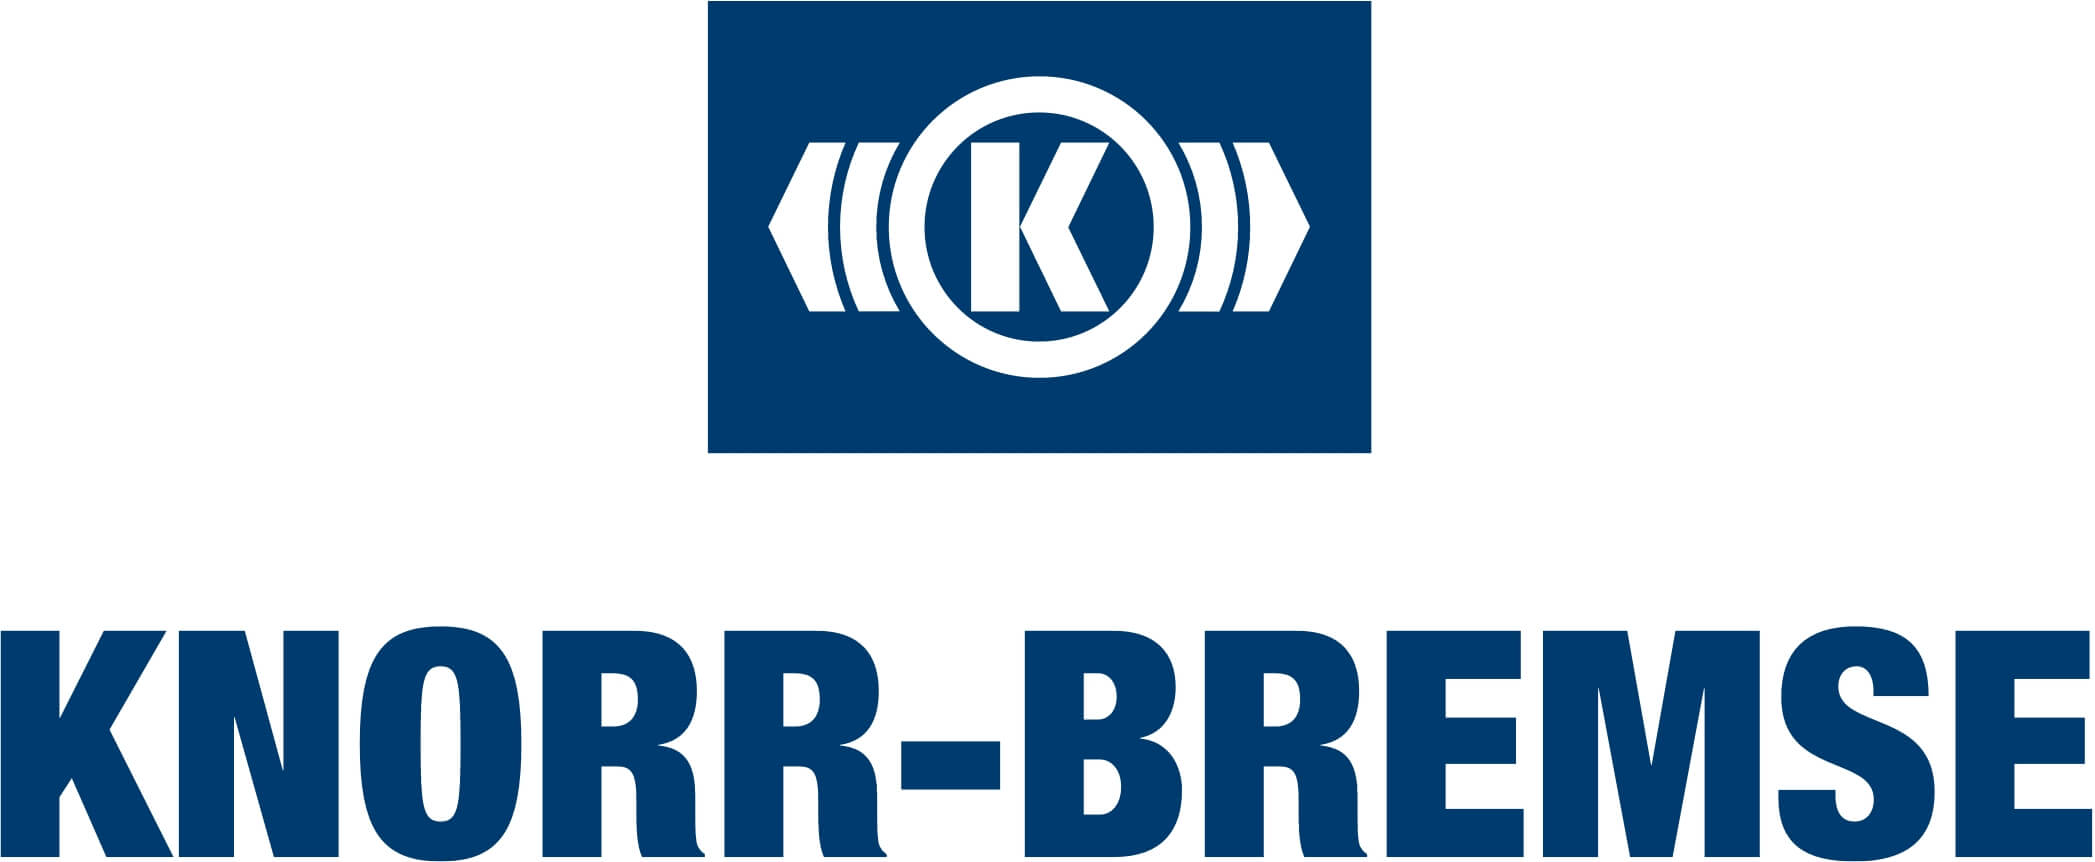 Knorr-Bremse logó